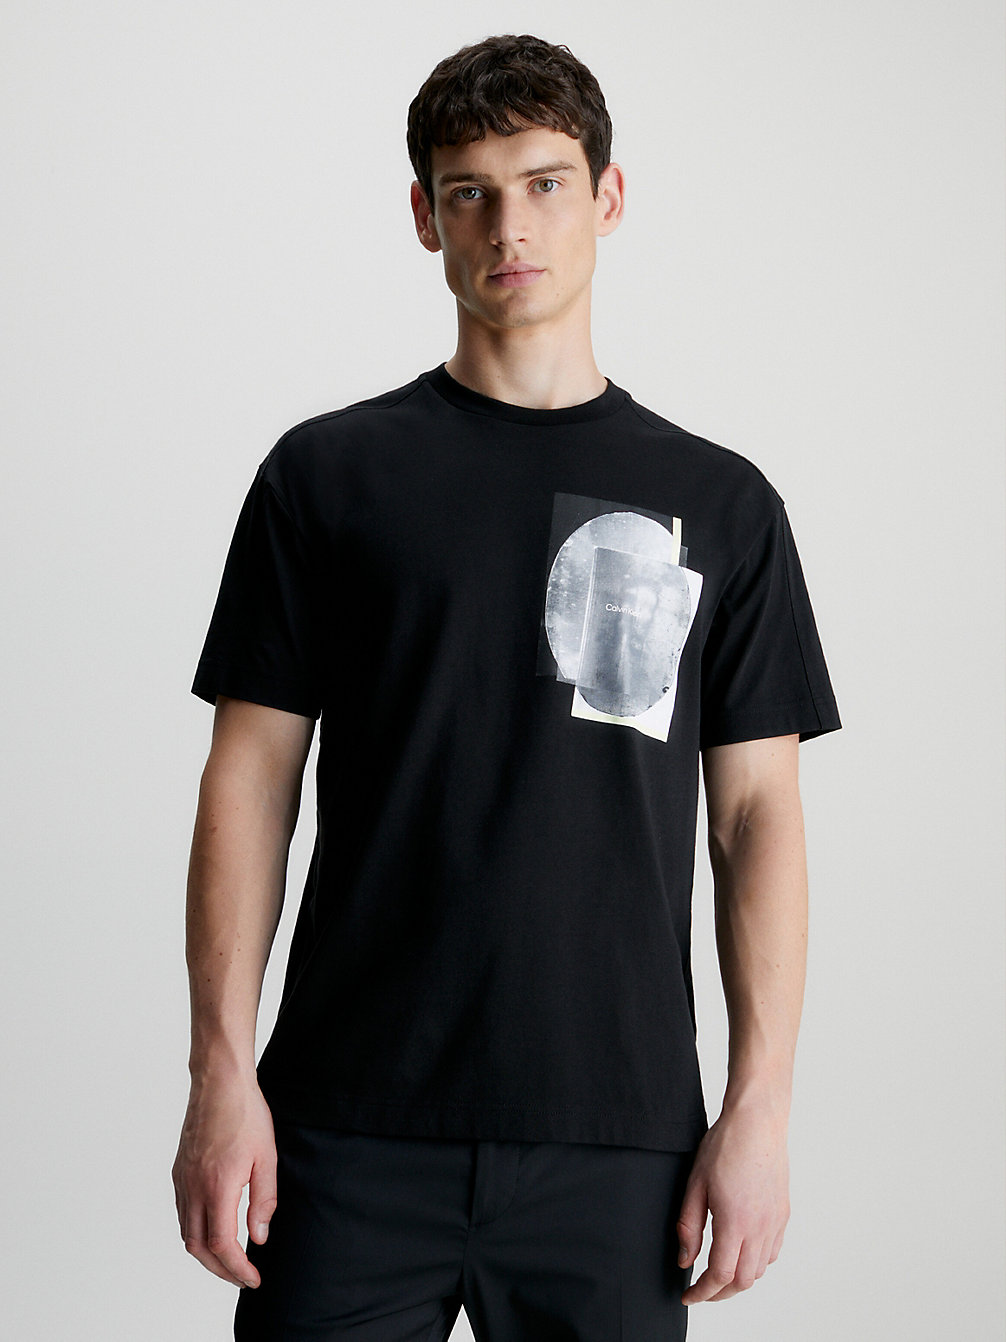 CK BLACK > T-Shirt Bawełniany Z Grafiką > undefined Mężczyźni - Calvin Klein